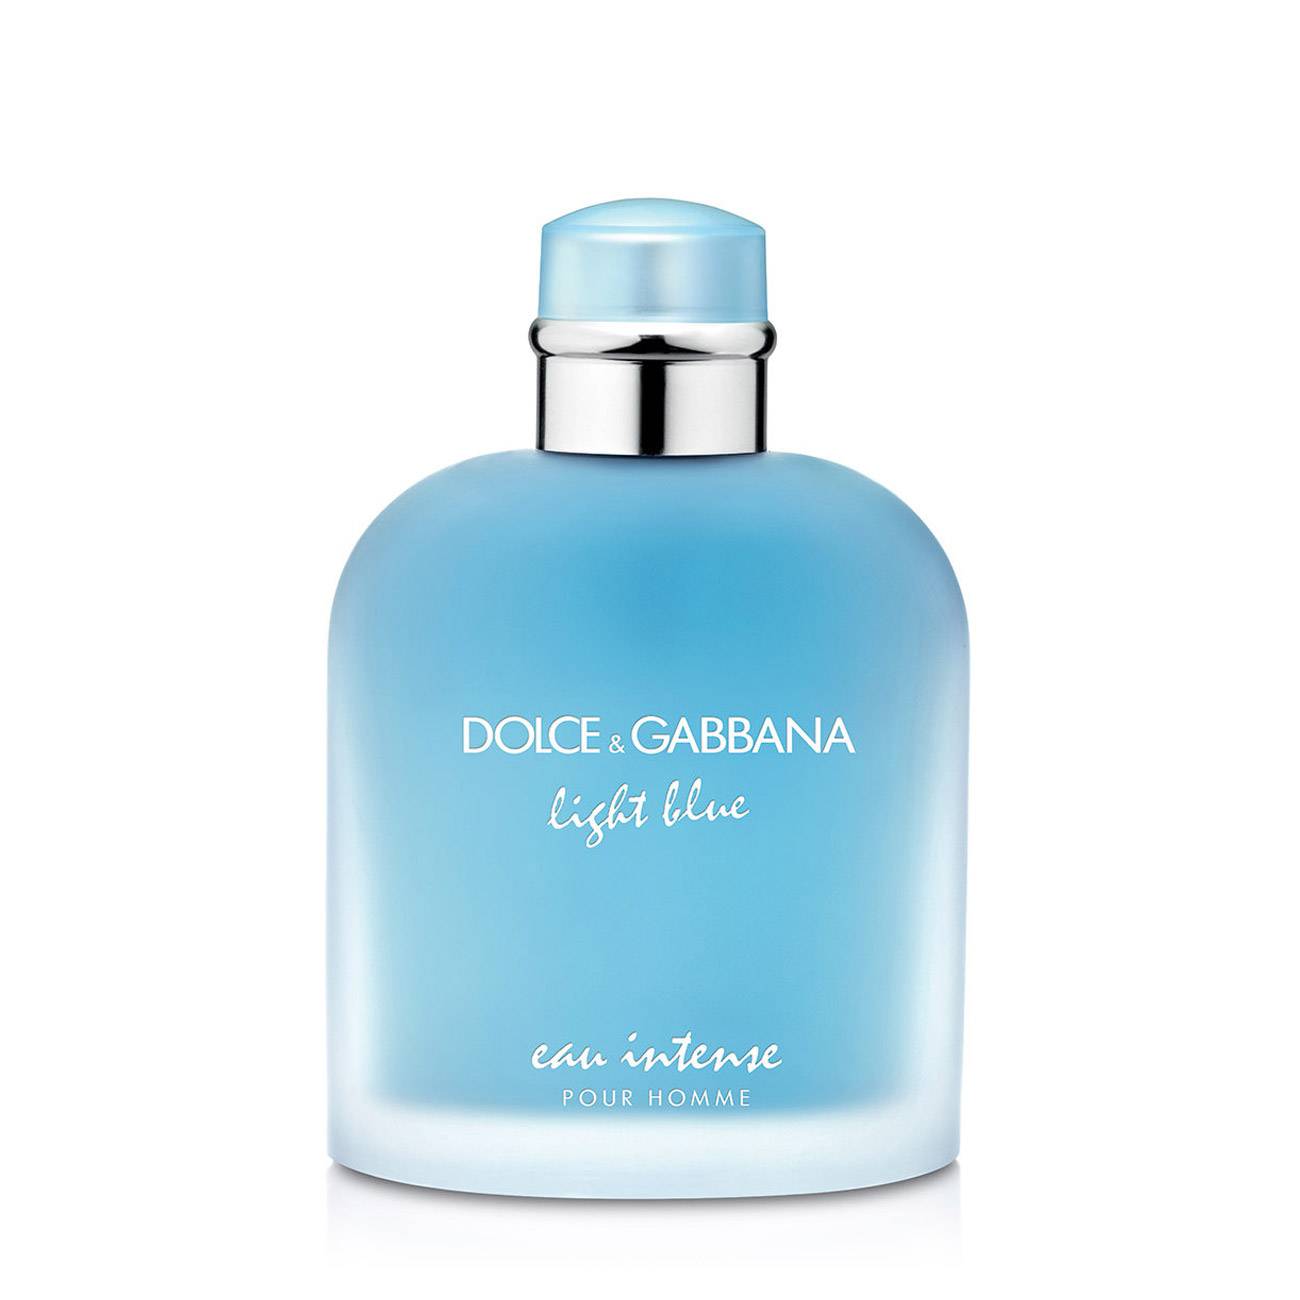 Apa de Parfum Dolce & Gabbana LIGHT BLUE EAU INTENSE POUR HOMME 100ml cu comanda online